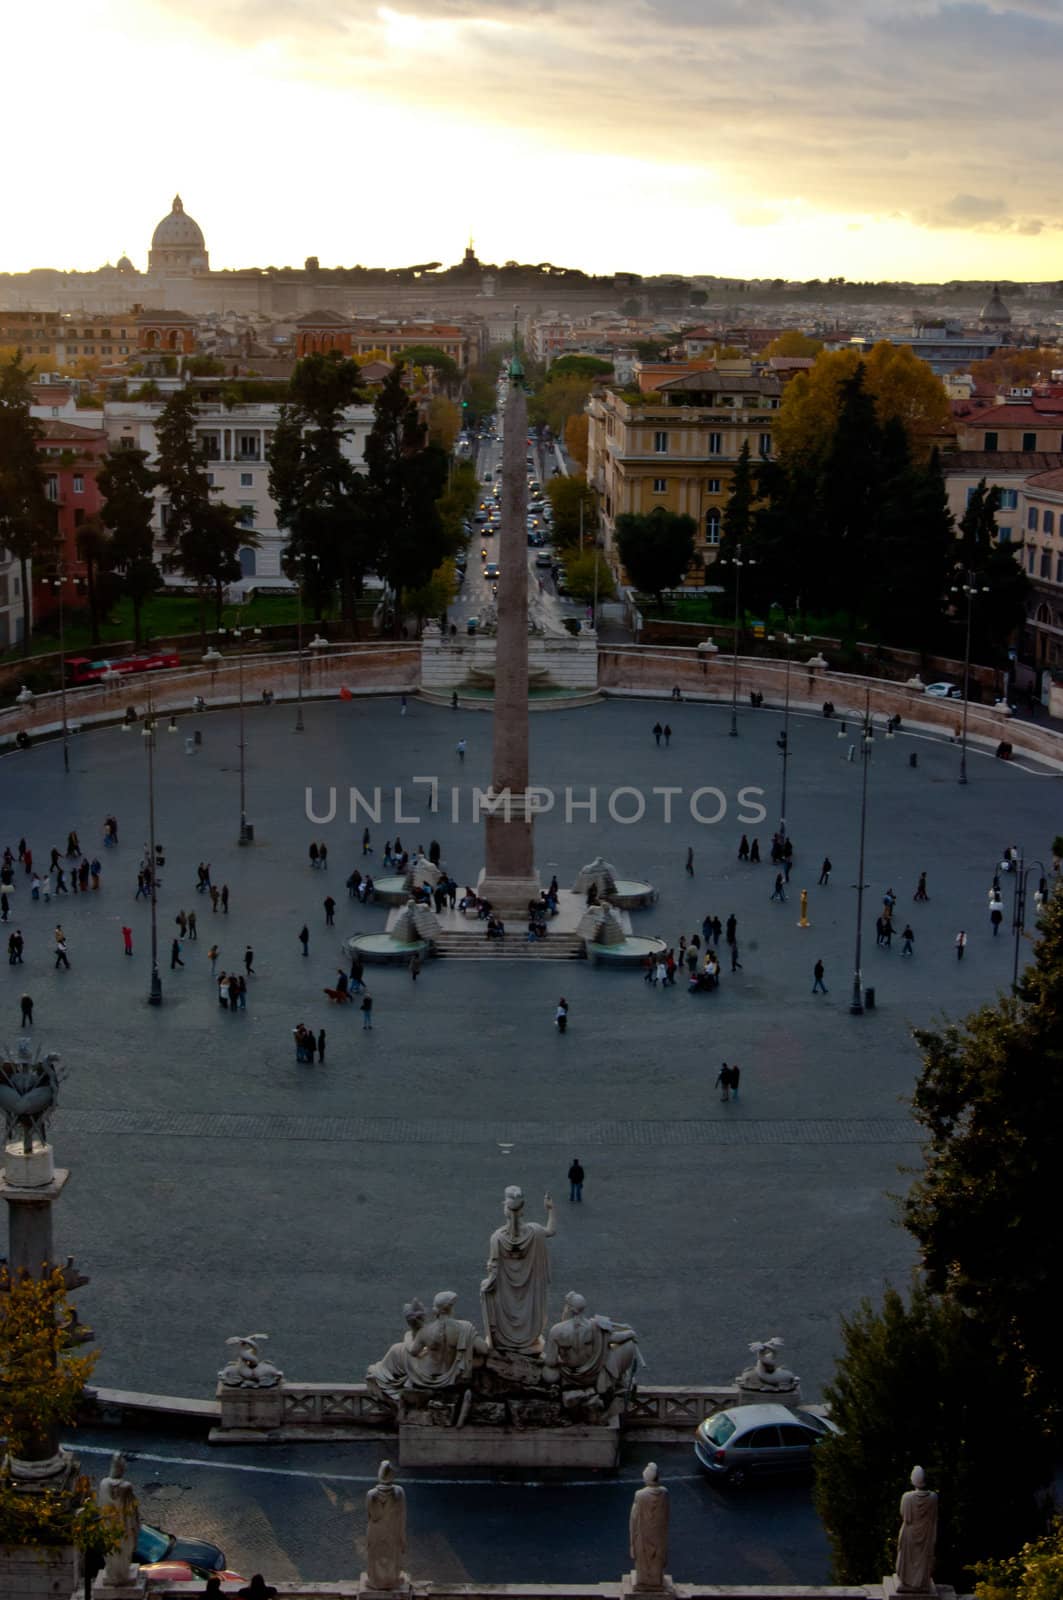 Piazza del Popolo with San Pietro in the background